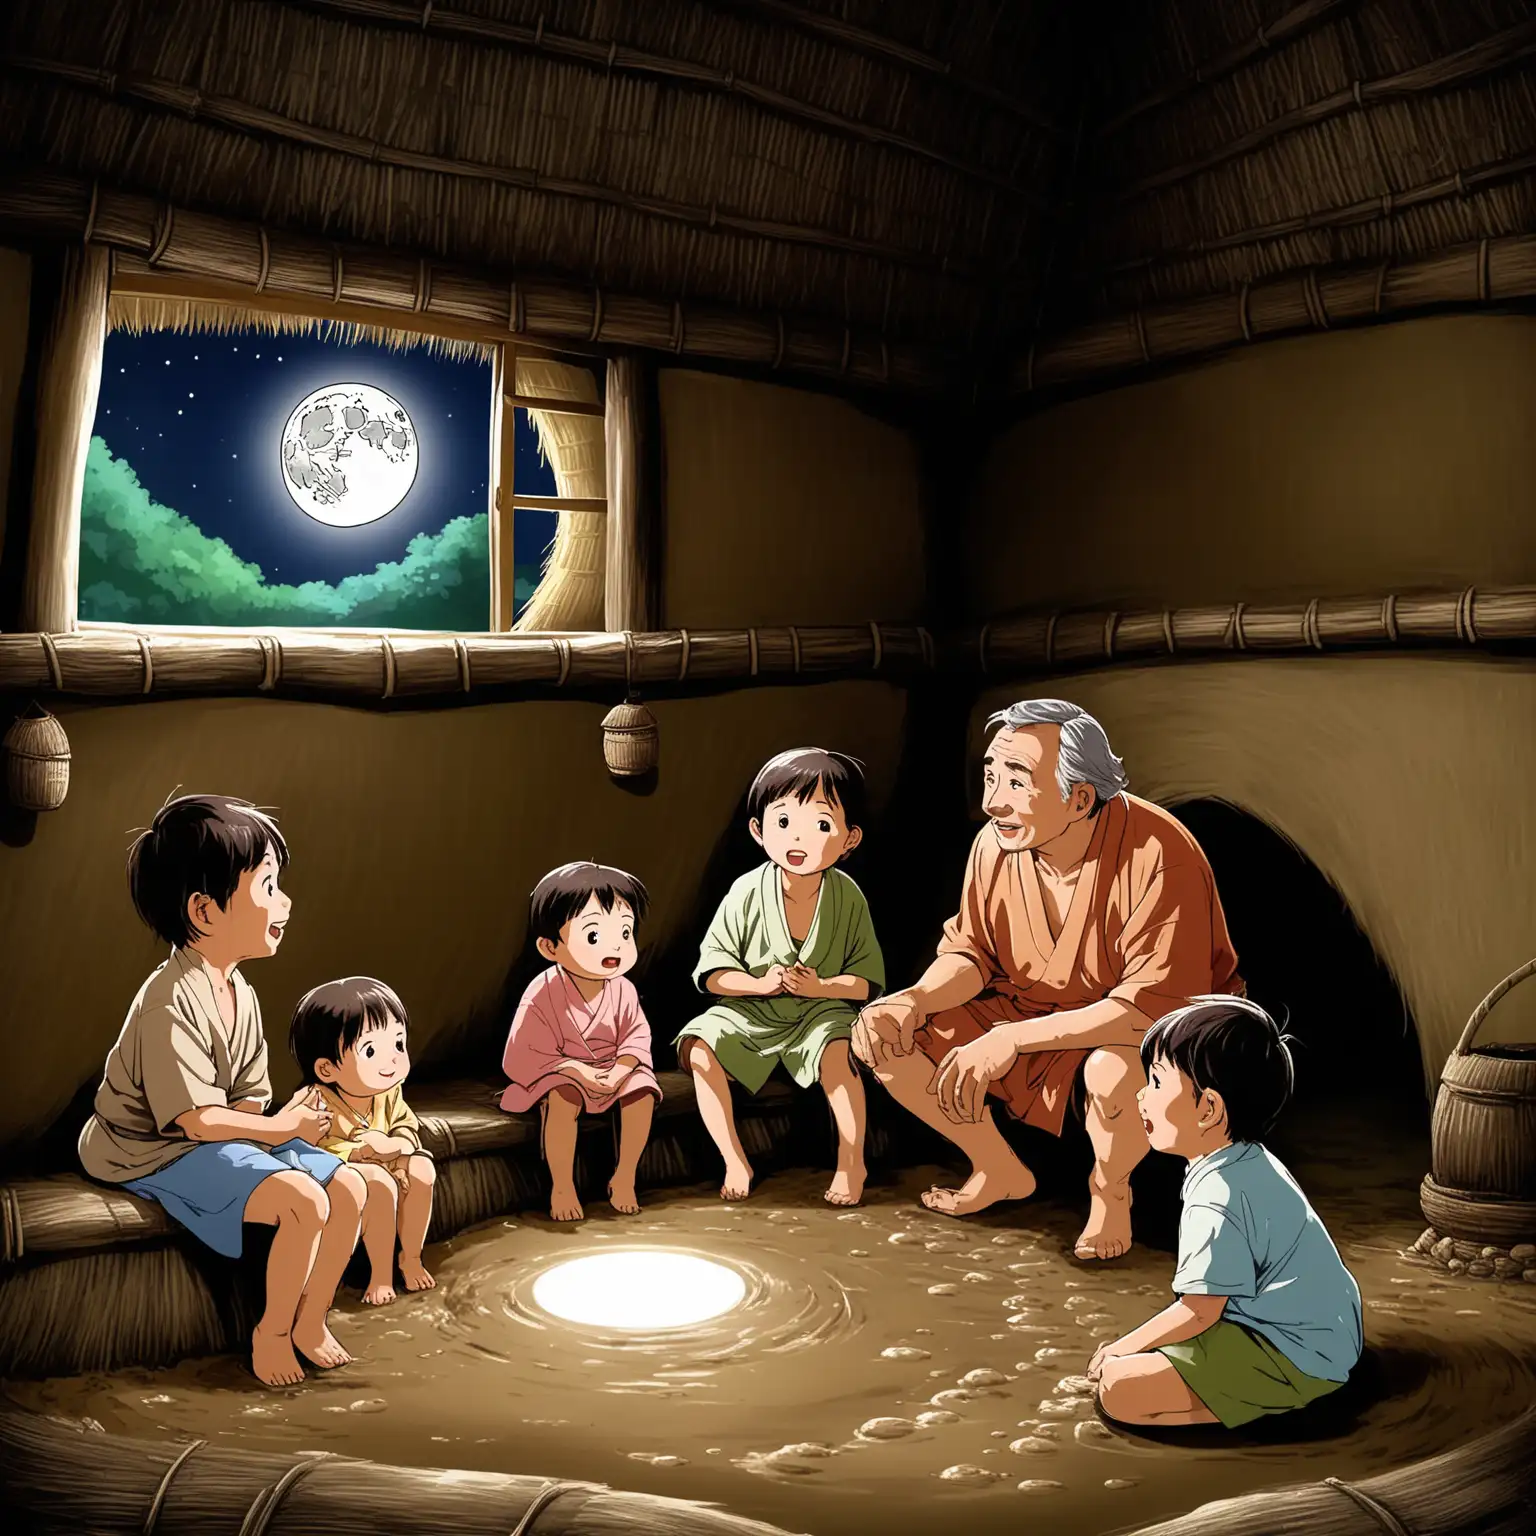 在一座泥坯茅草屋里，有一个中年男人在给三个小孩讲故事，窗户外面可以看到洁白的月亮